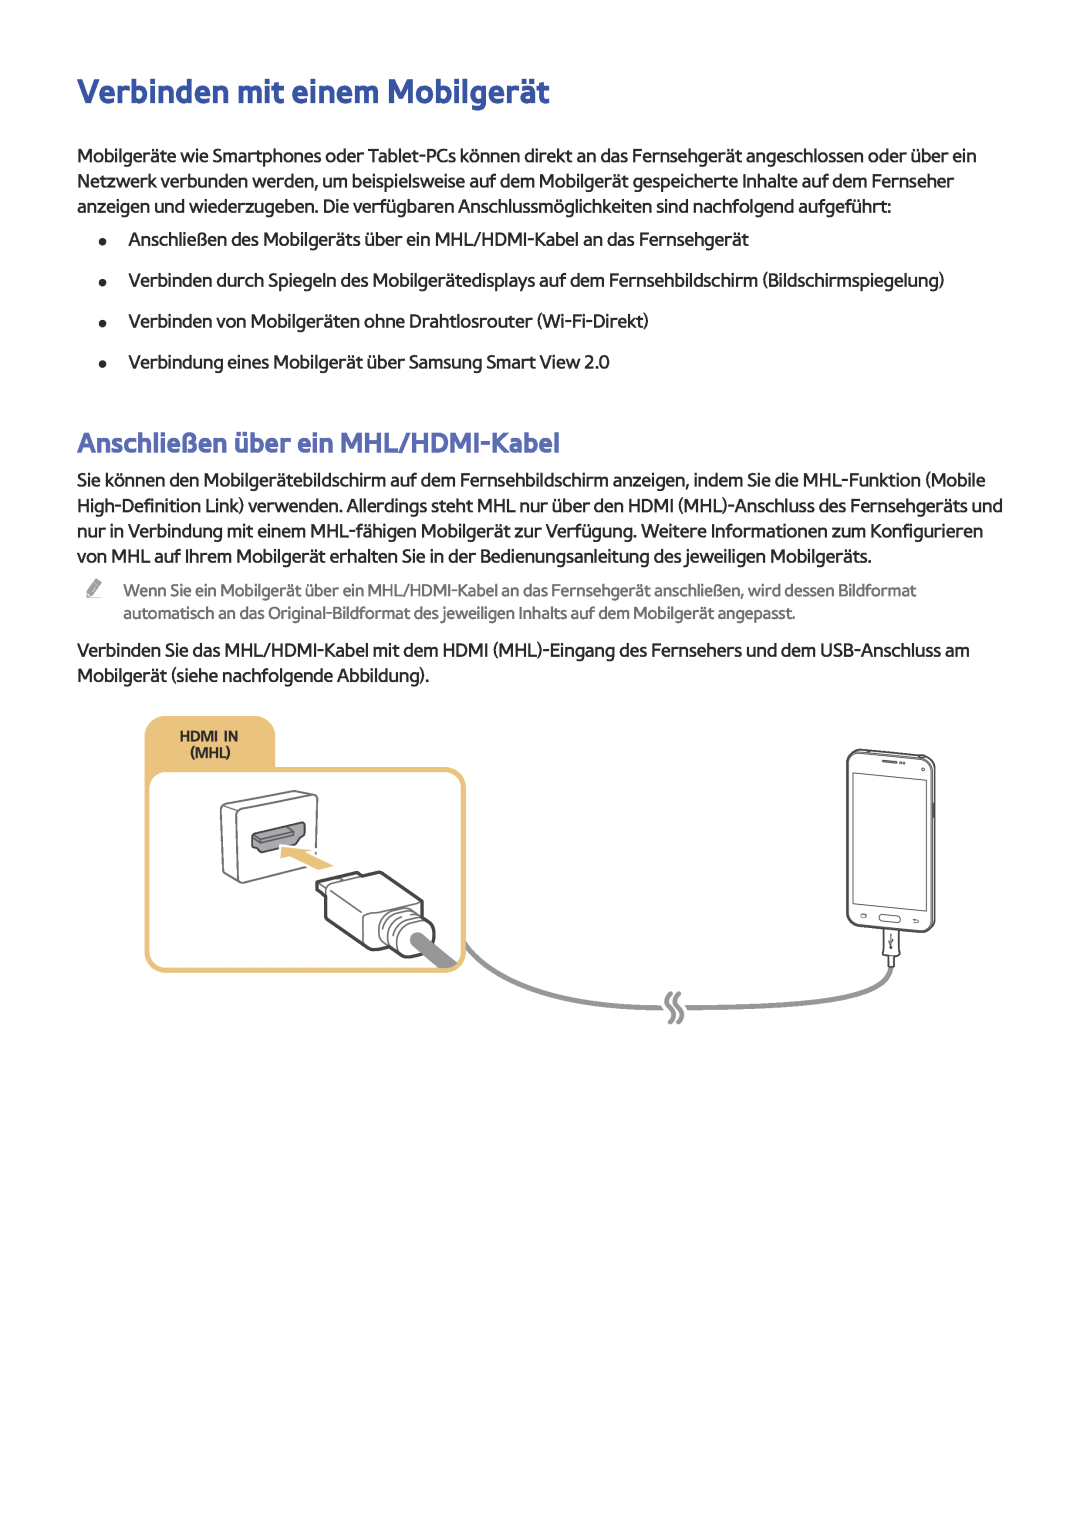 Samsung UE55JU6495UXZG, UE40JU6495UXZG, UE48JU6495UXZG Verbinden mit einem Mobilgerät, Anschließen über ein MHL/HDMI-Kabel 